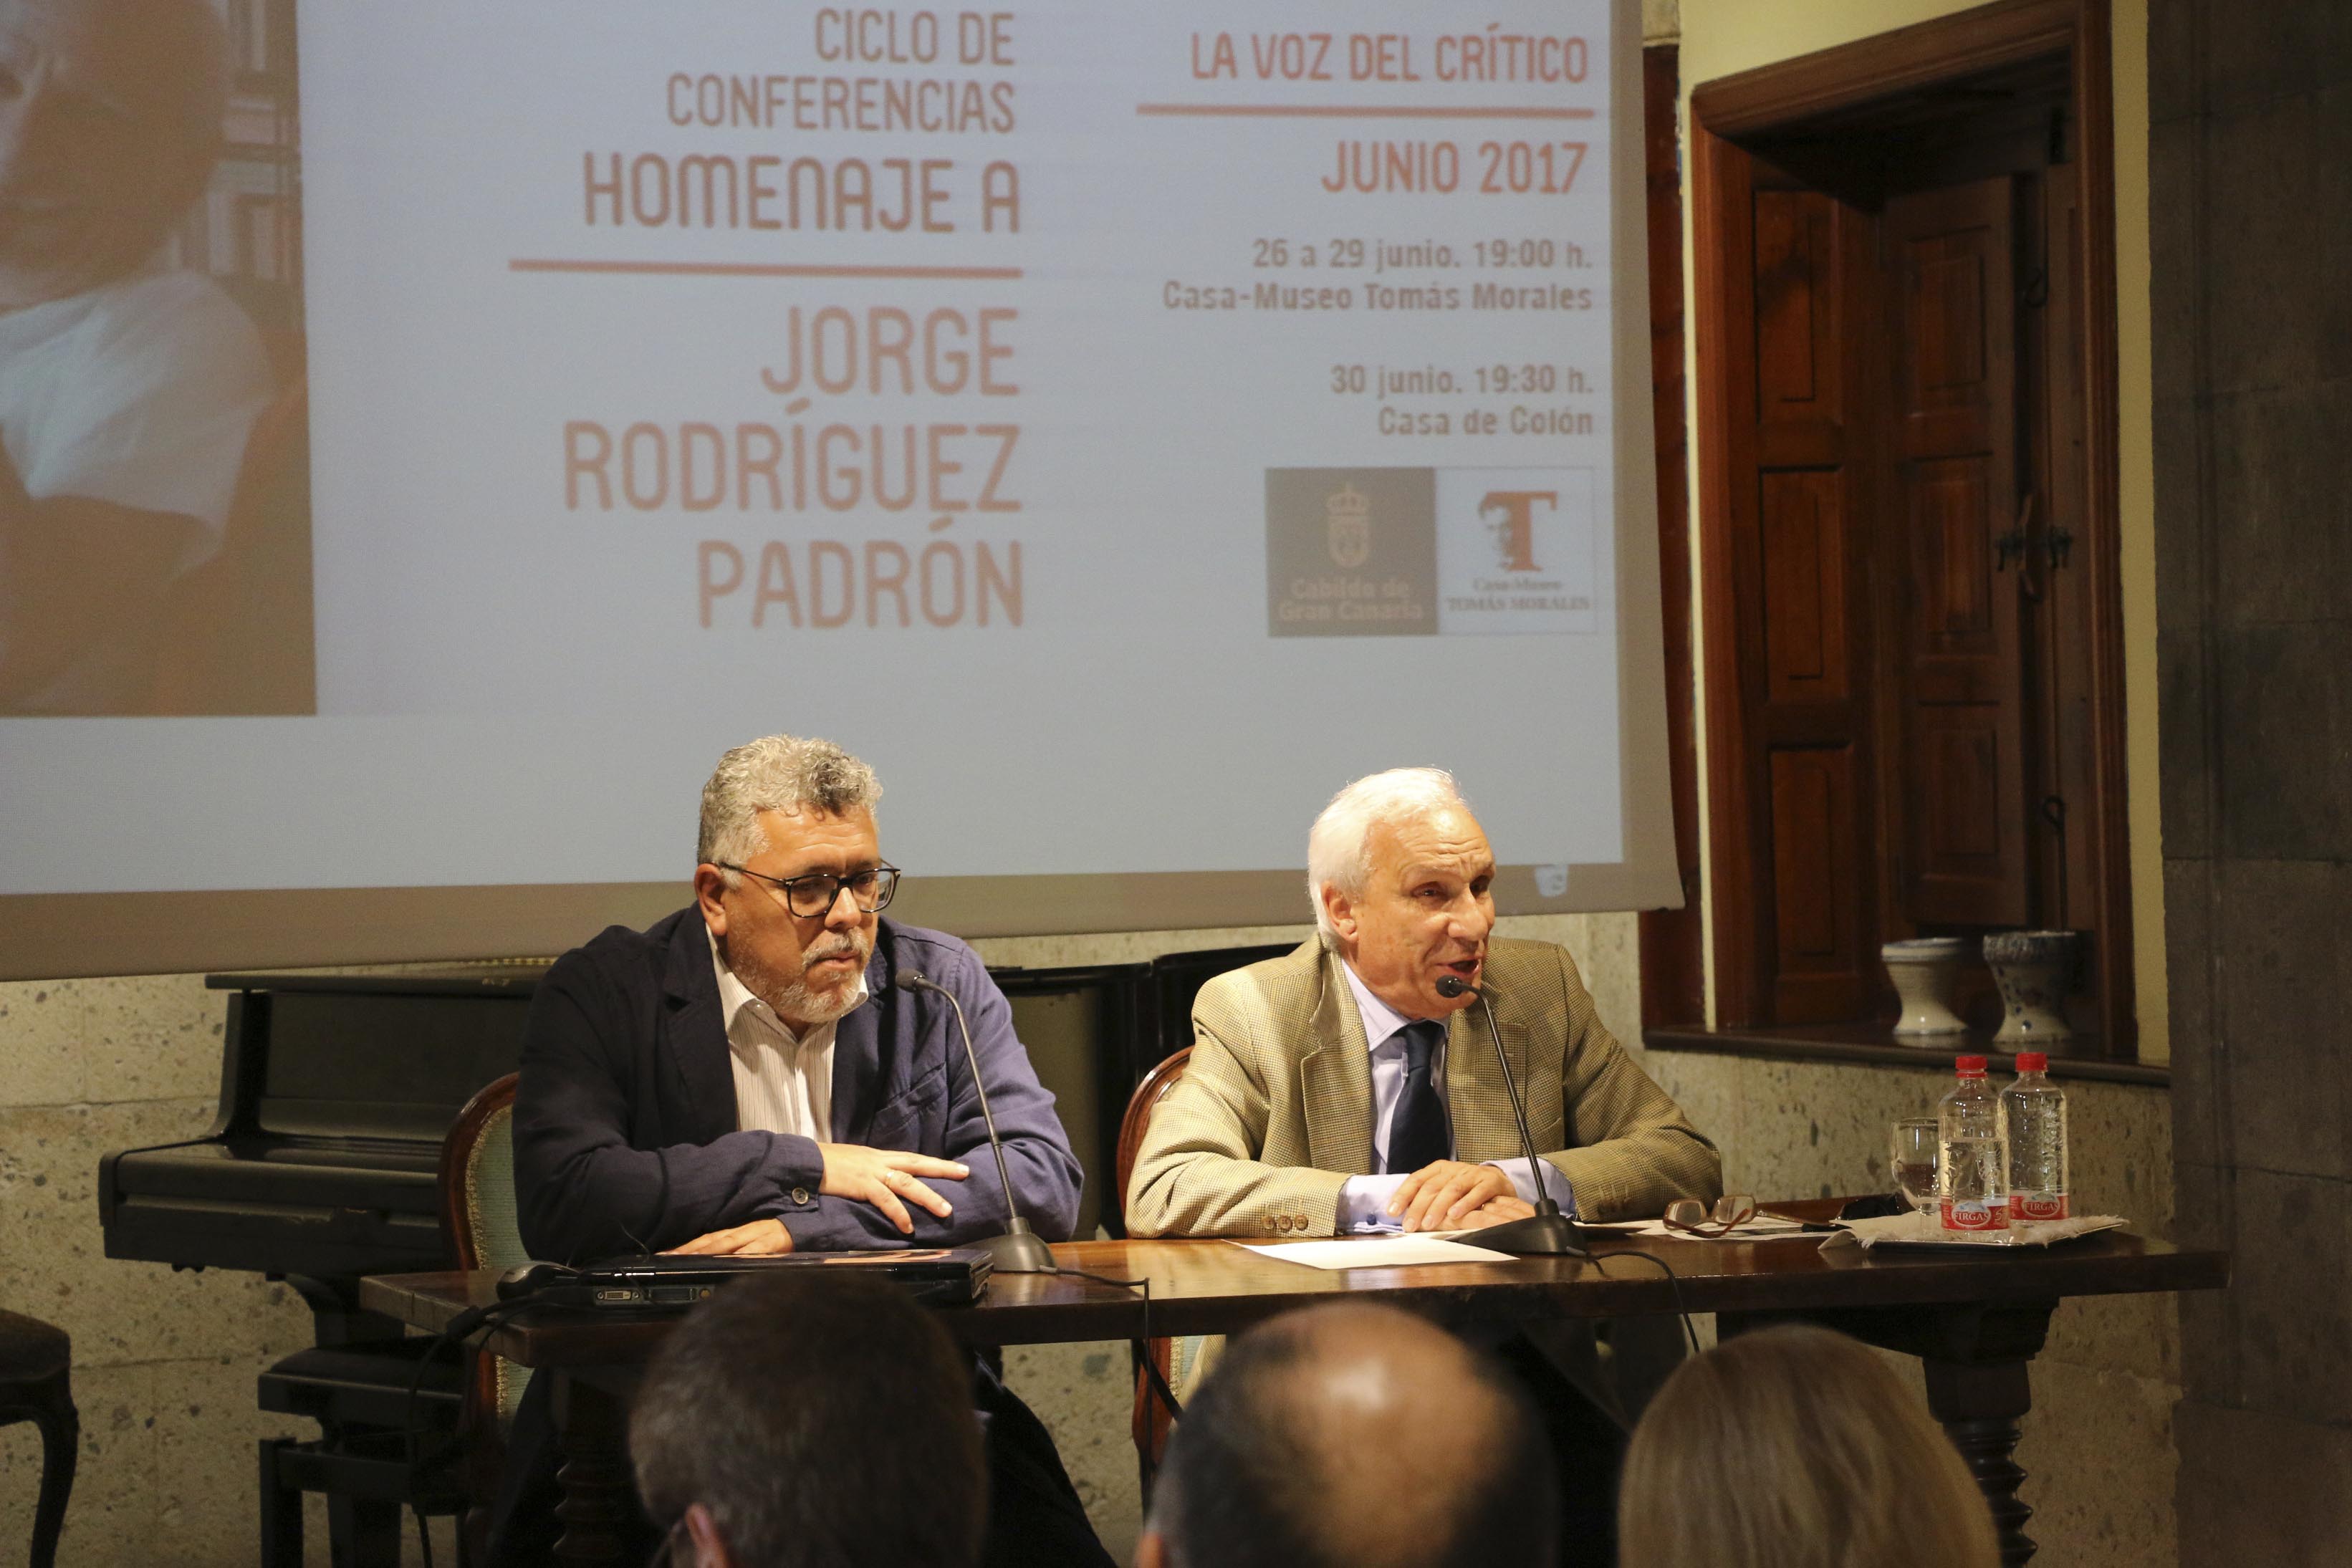 Guillermo Perdomo, director de la Casa-Museo Tomás Morales, y Rodríguez Padrón